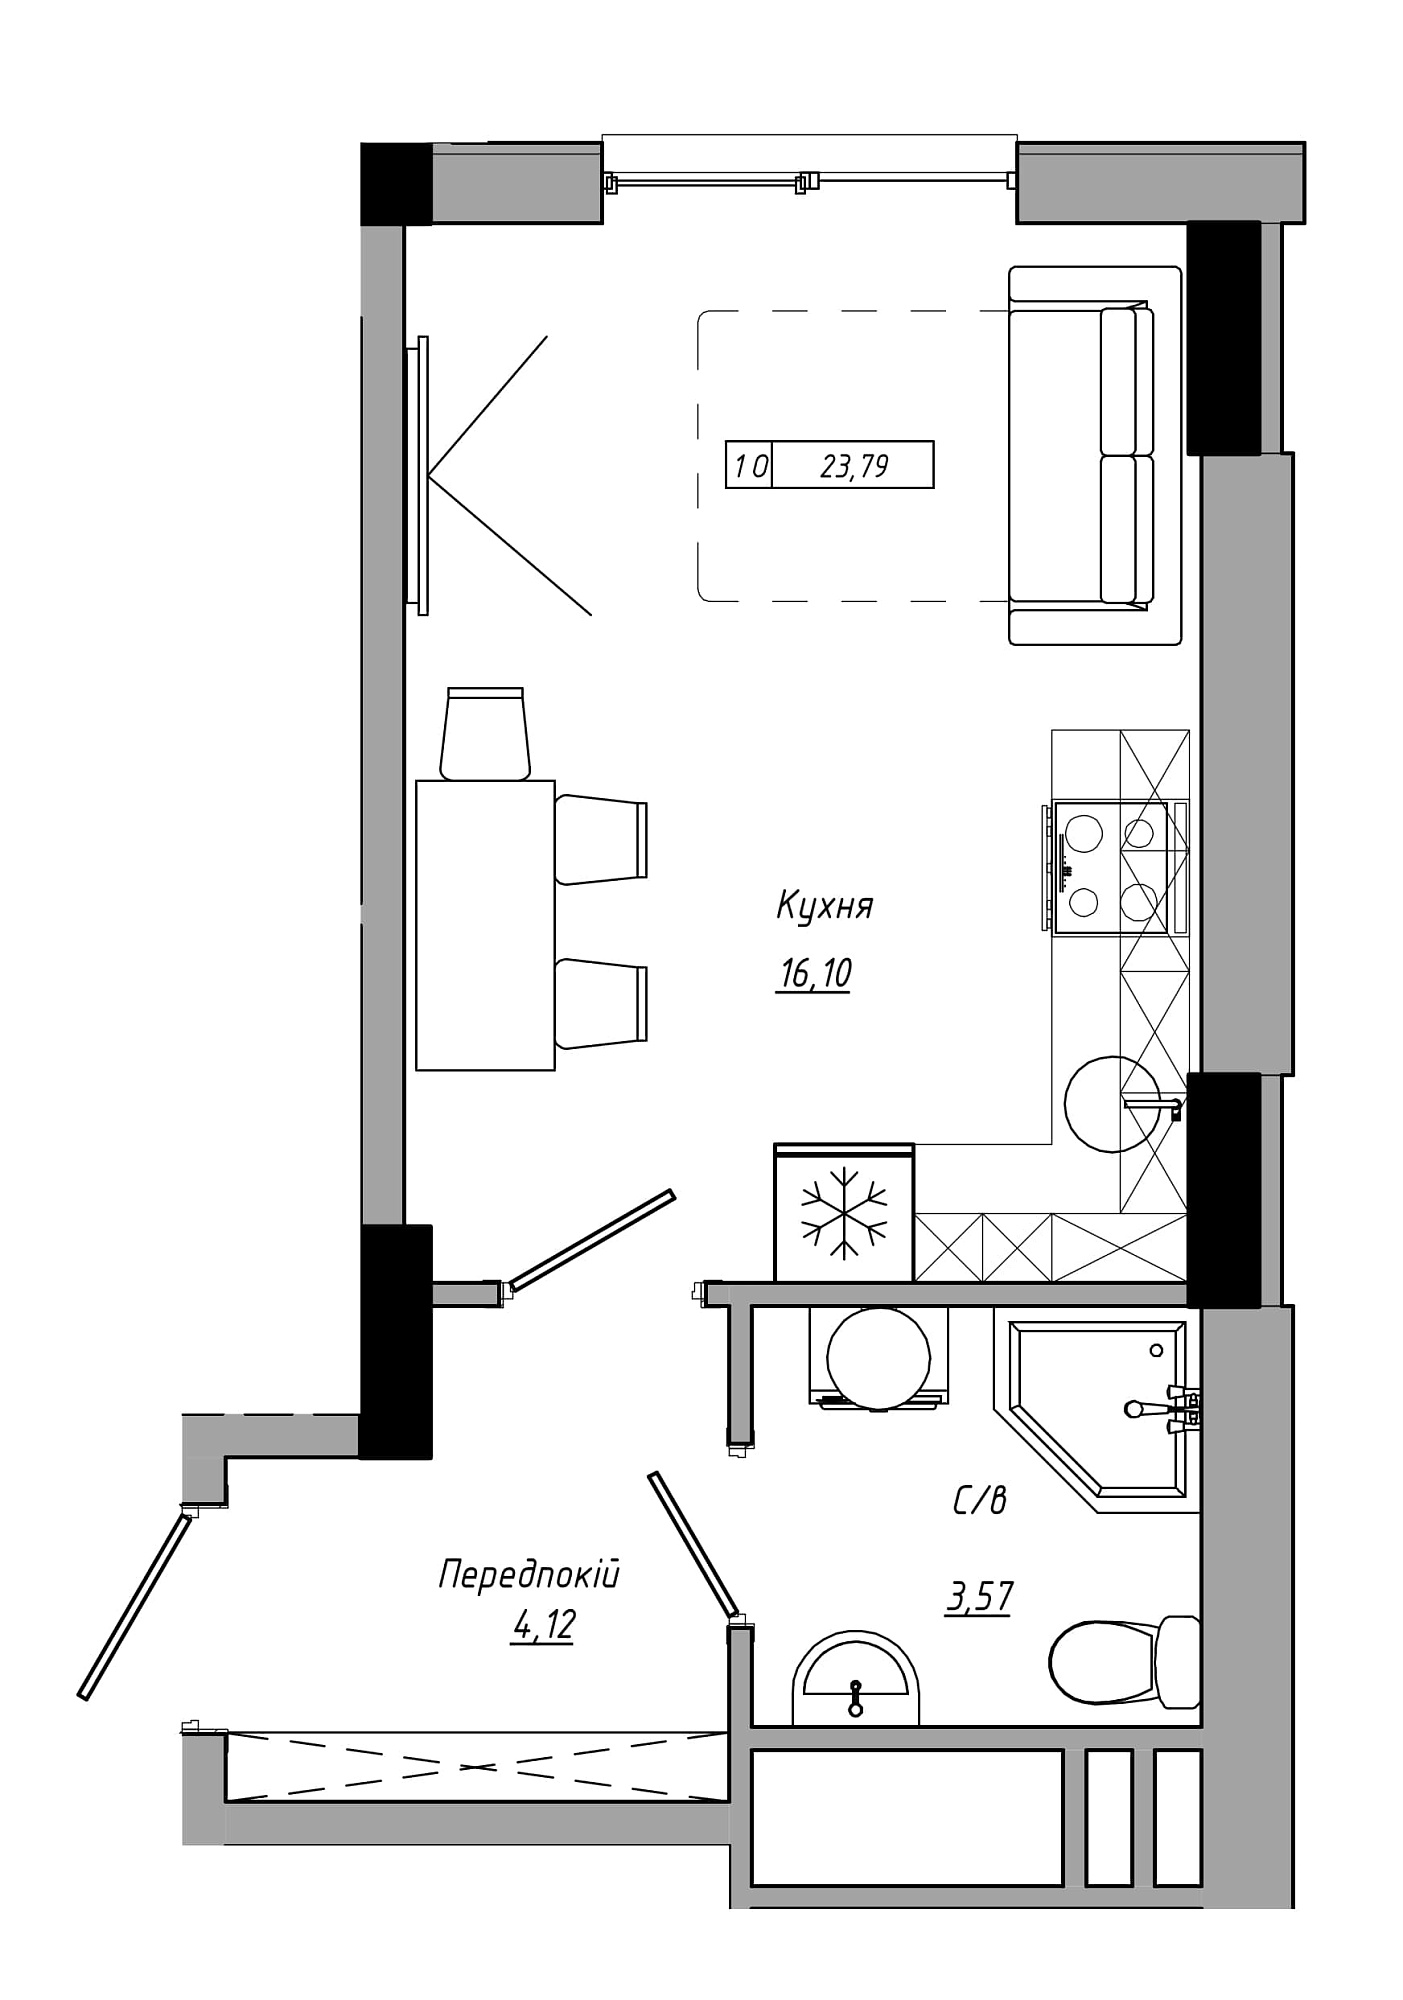 Планування Smart-квартира площею 23.79м2, AB-21-12/00017.